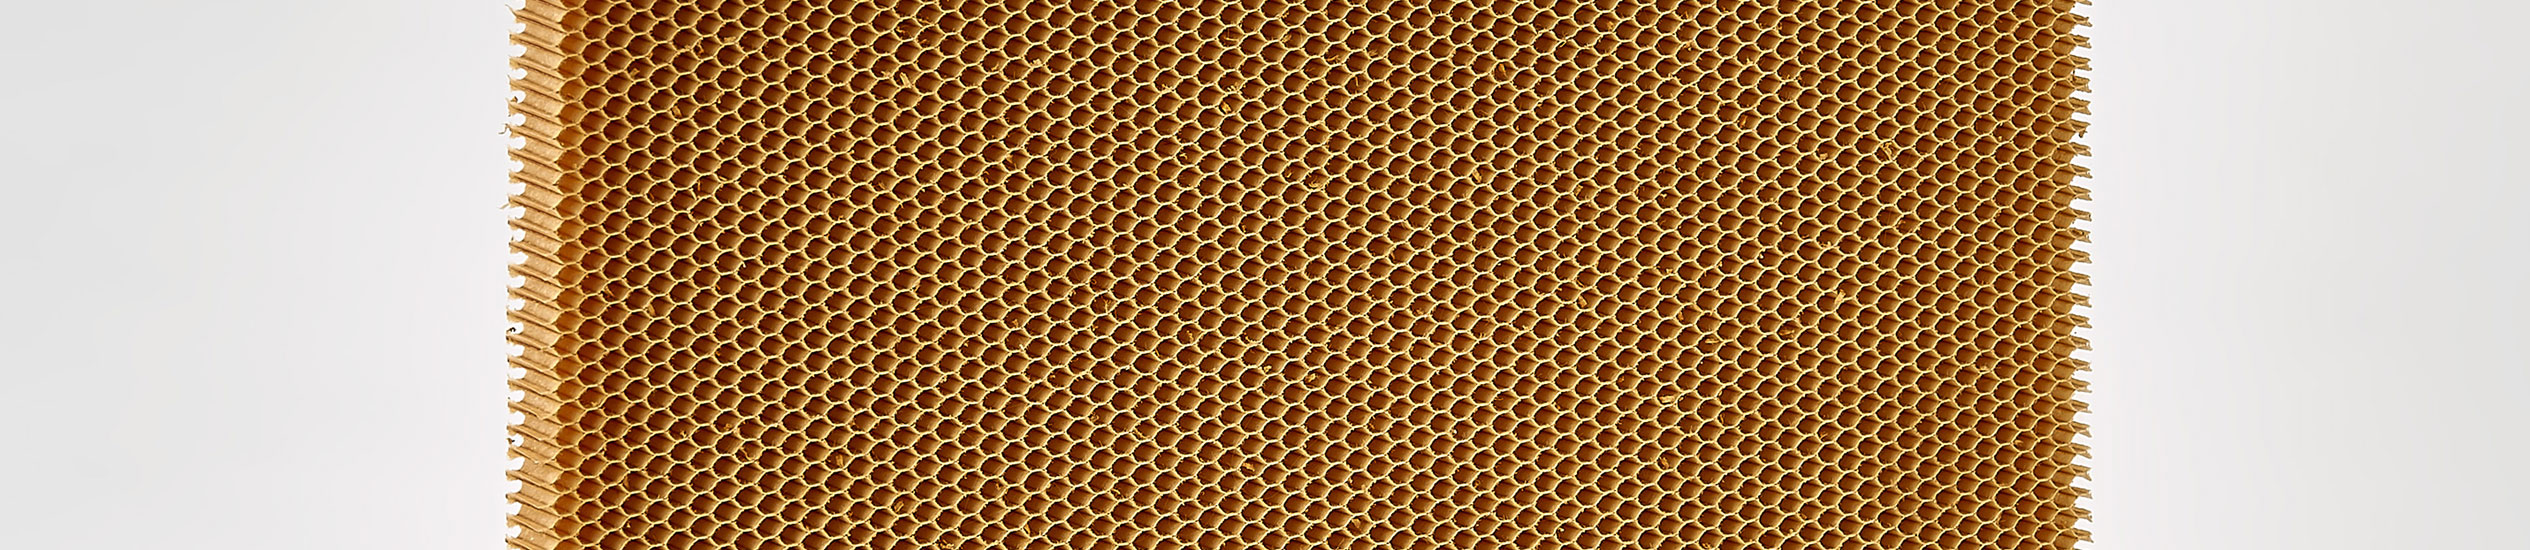 Il nido d'ape in Nomex® è un prodotto non metallico, leggero e resistente realizzato con carta aramidica. È usato principalmente nel settore aeronautico.